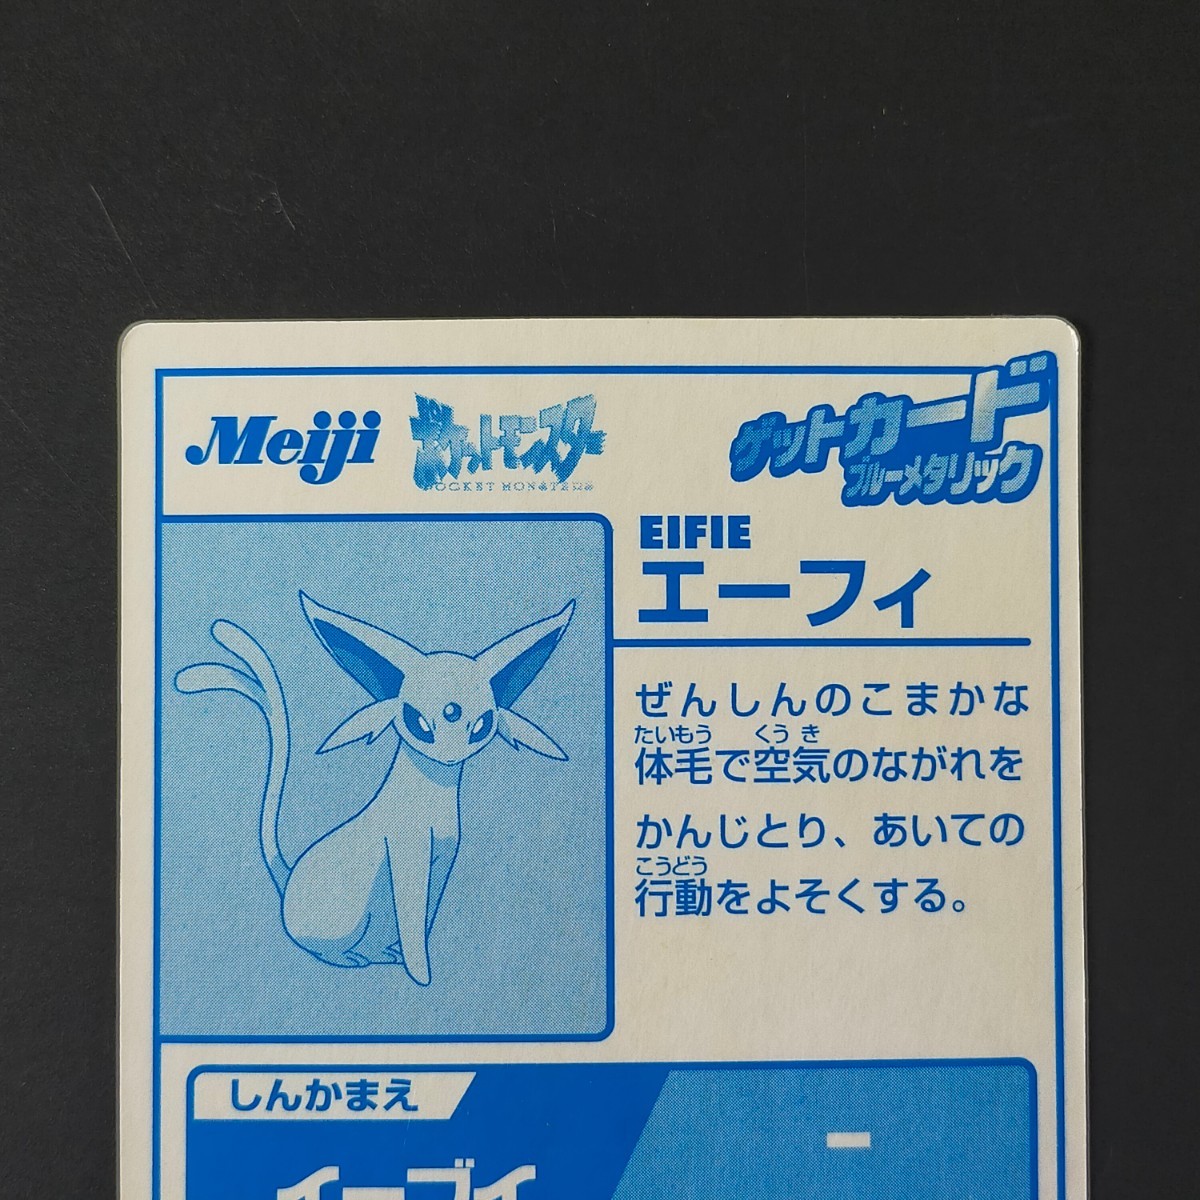 エーフィ 明治 Meiji スーパーコレクション ポケモン ゲット カード ブルーメタリック チョコスナック 食玩 アドバンスジェネレーション_画像5